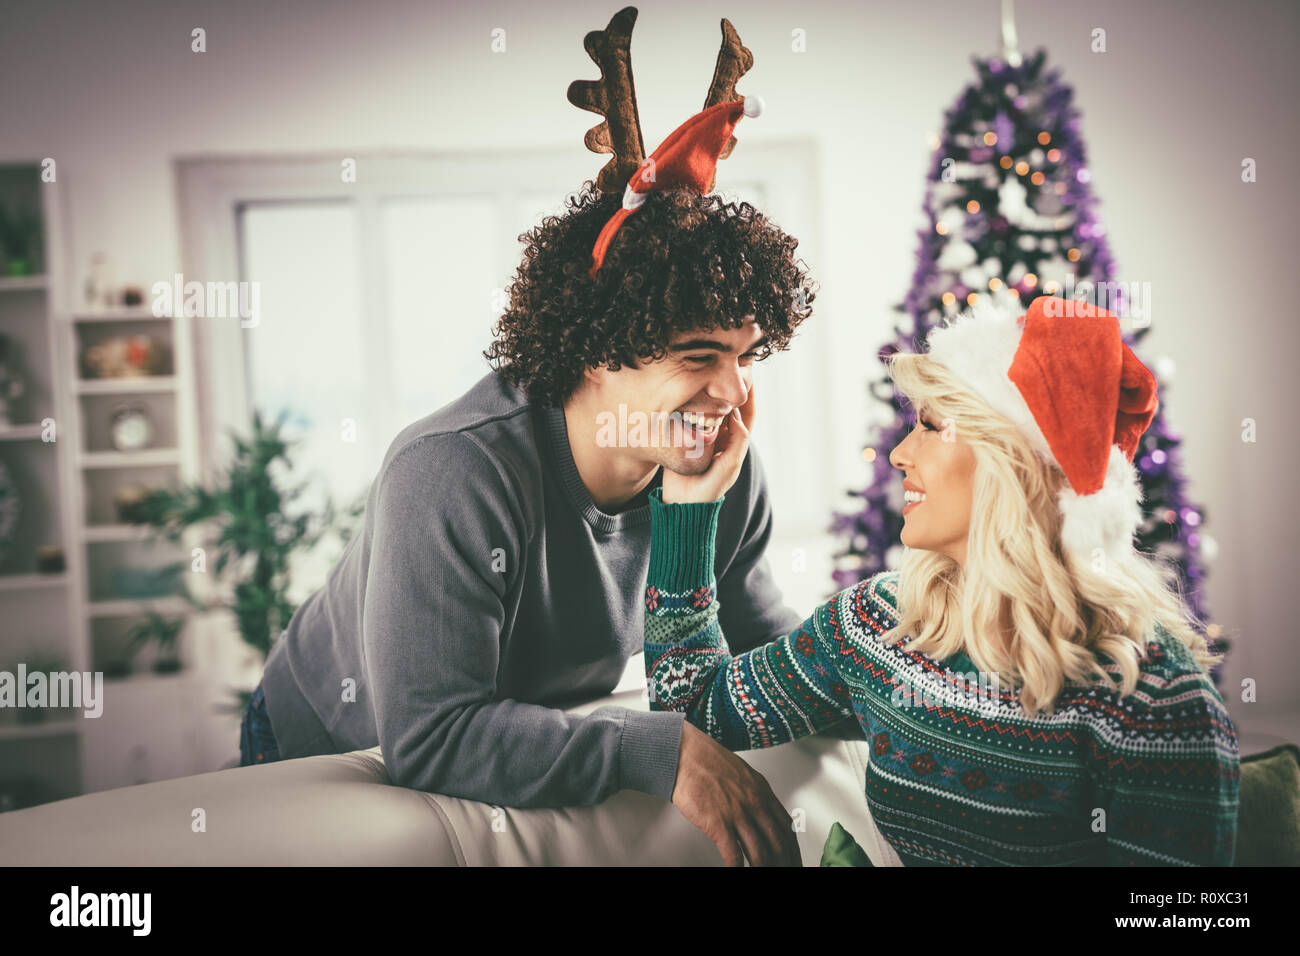 Paar in der gemütlichen warmen Pullover auf ein Weihnachten - Silvester, lächelnd und Spaß mit einander. Stockfoto